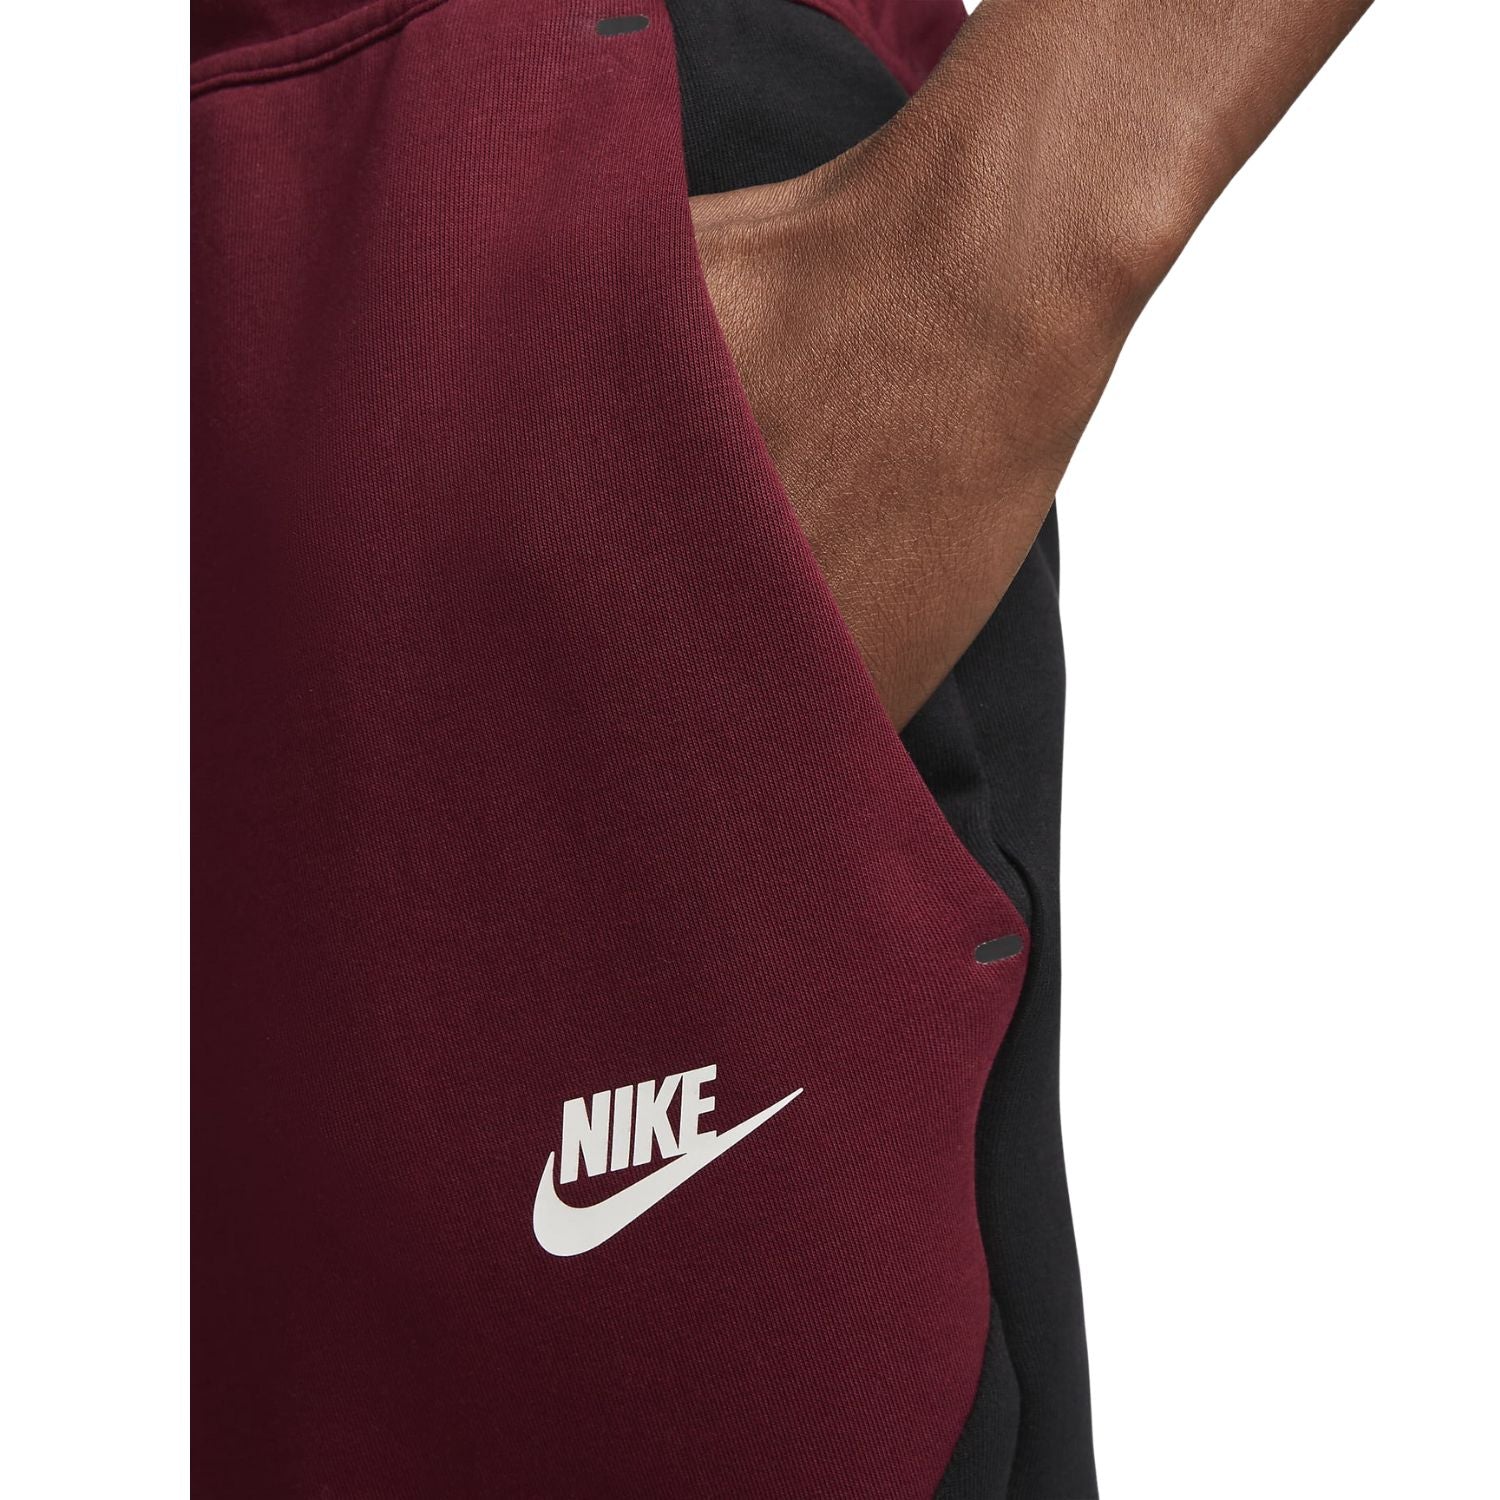 Nike Sportswear Tech Fleece Joggers Black/Dark Beetroot/Phantom